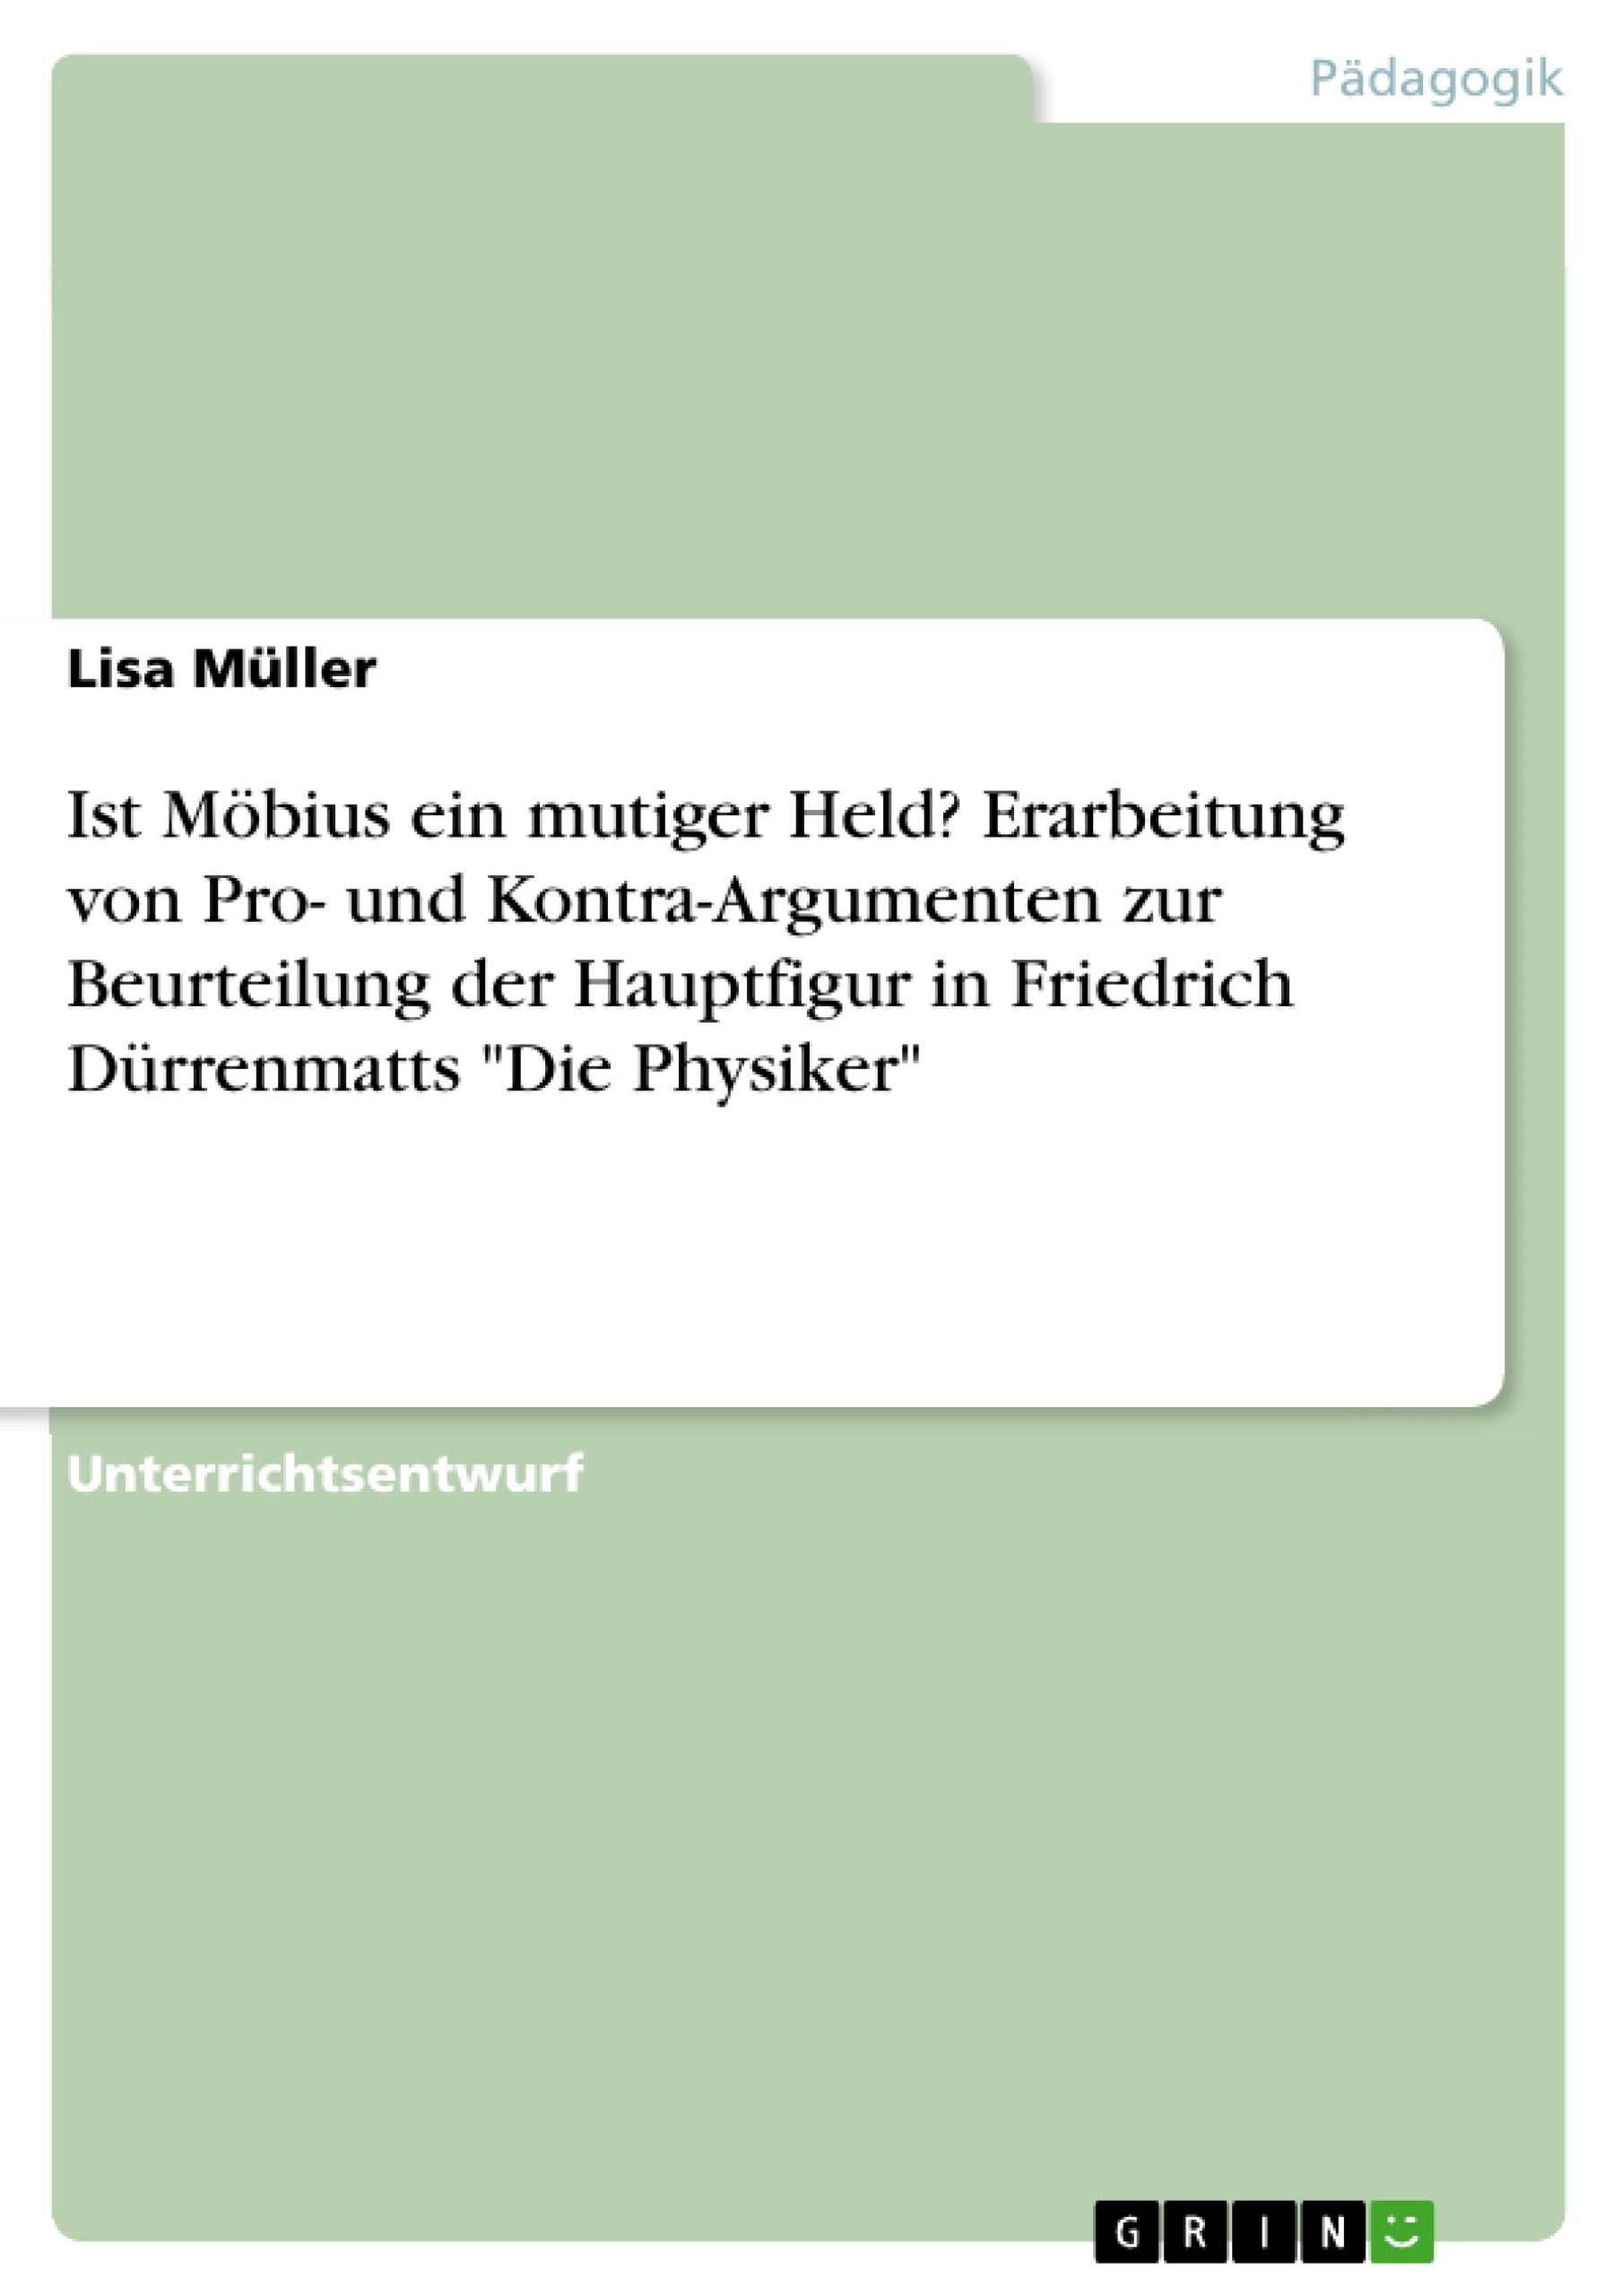 Título: Ist Möbius ein mutiger Held? Erarbeitung von Pro- und Kontra-Argumenten zur Beurteilung der Hauptfigur in Friedrich Dürrenmatts "Die Physiker"